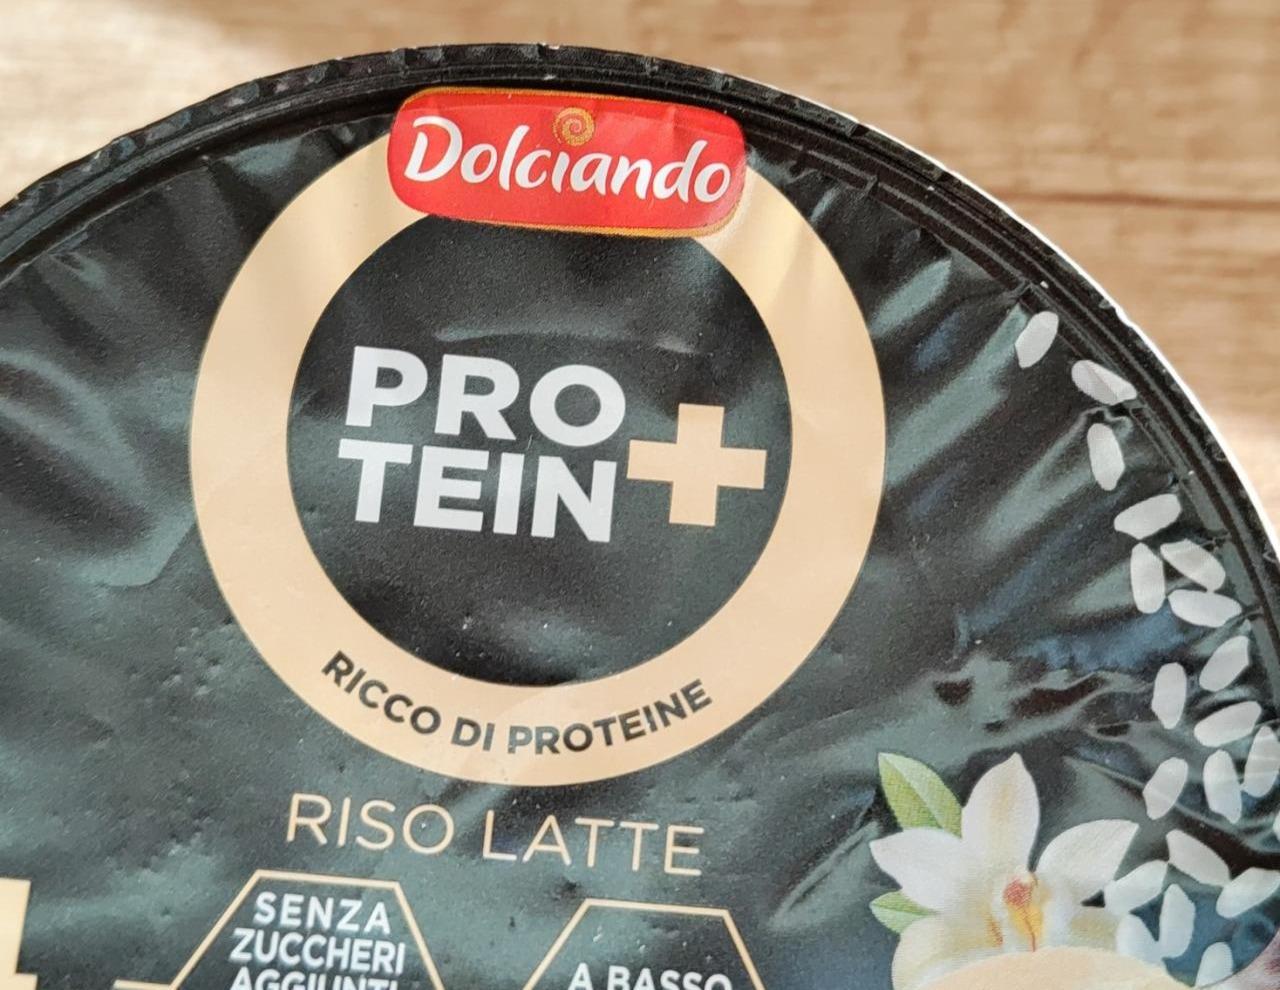 Fotografie - Protein+ Riso Latte Vaniglia Dolciando